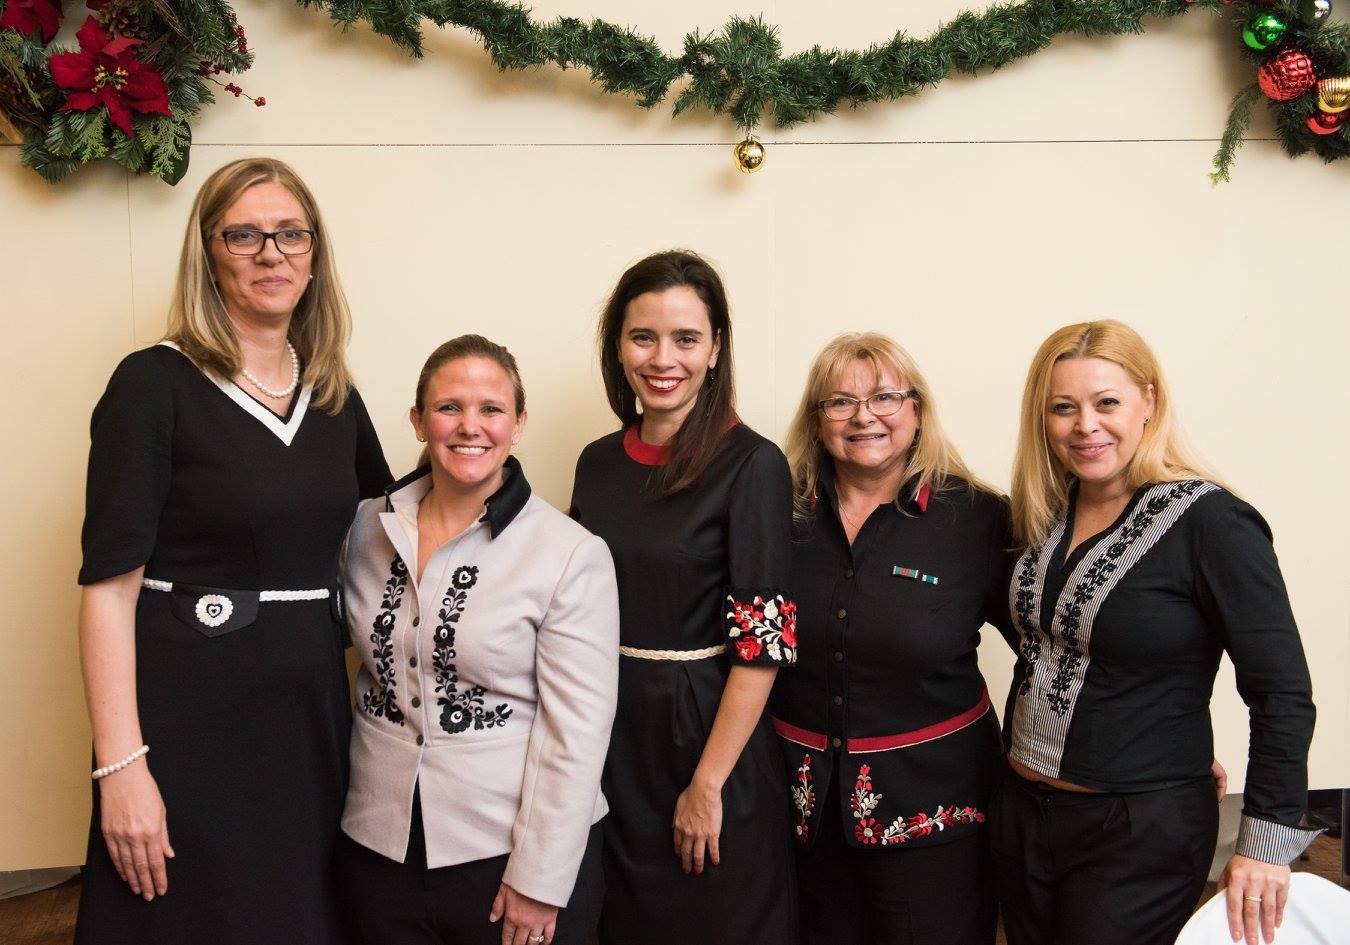 Ms. Andrea Gulyás, Mrs. Stephanie Ellis Foster, Dr. Ivonn Szeverényi, Mrs. Erika Fedor, Ms. Tünde Hrivnák